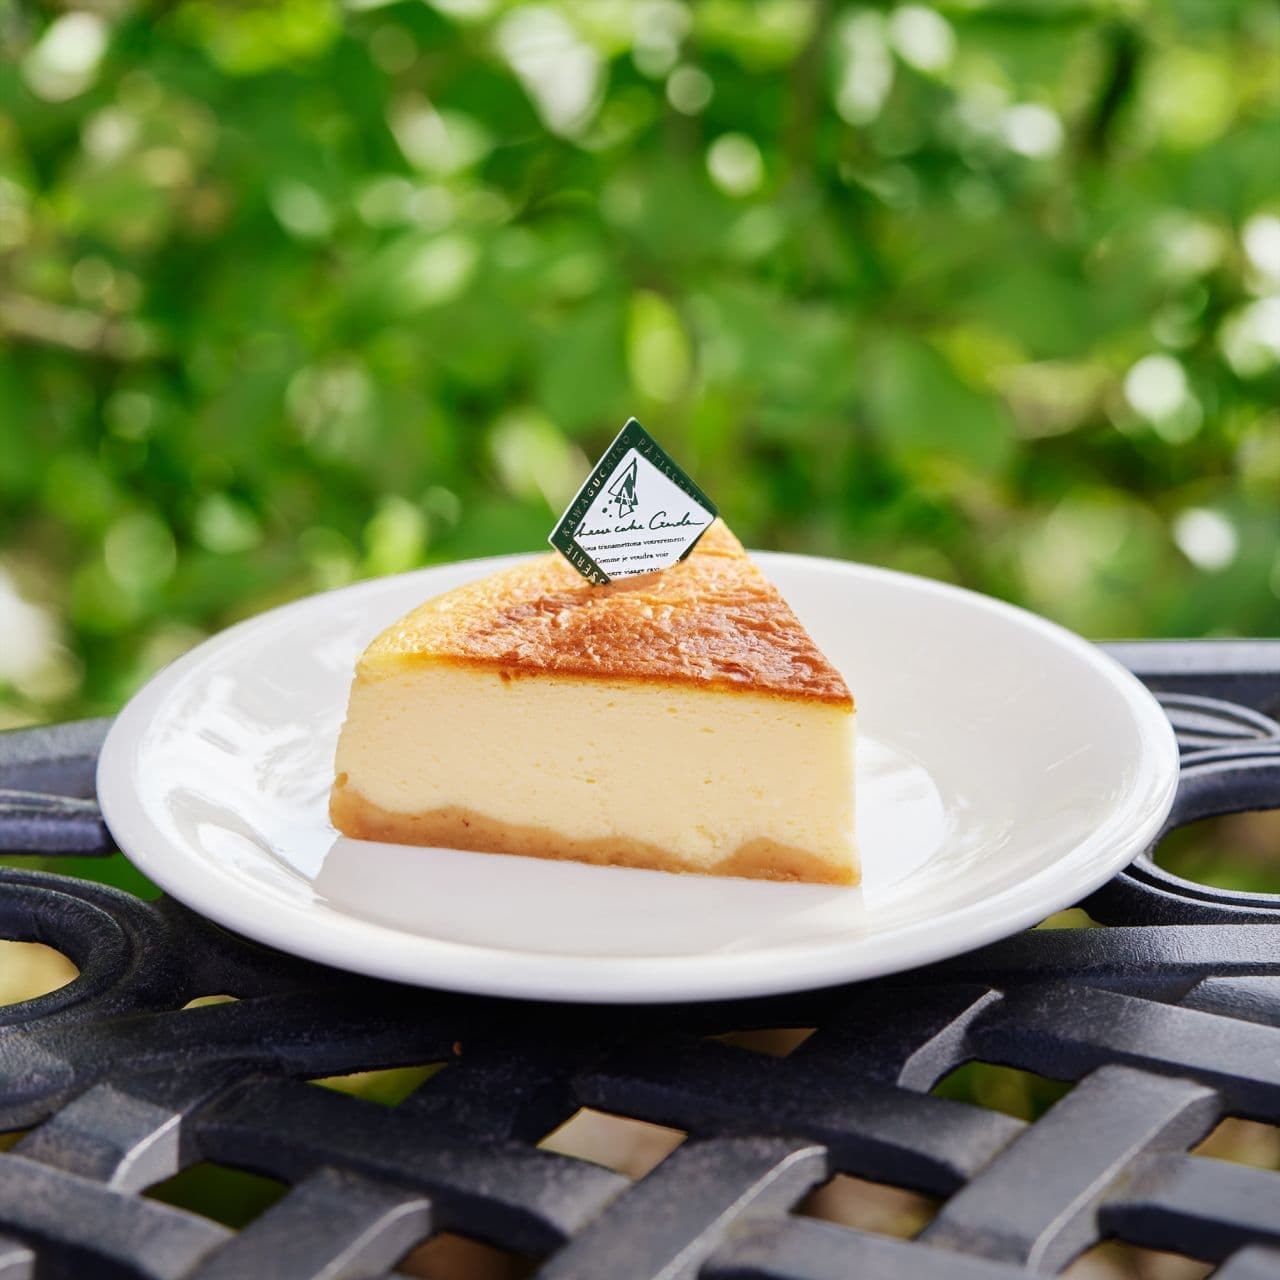 Fuji's Ripe Cheesecake" at Cheesecake Garden